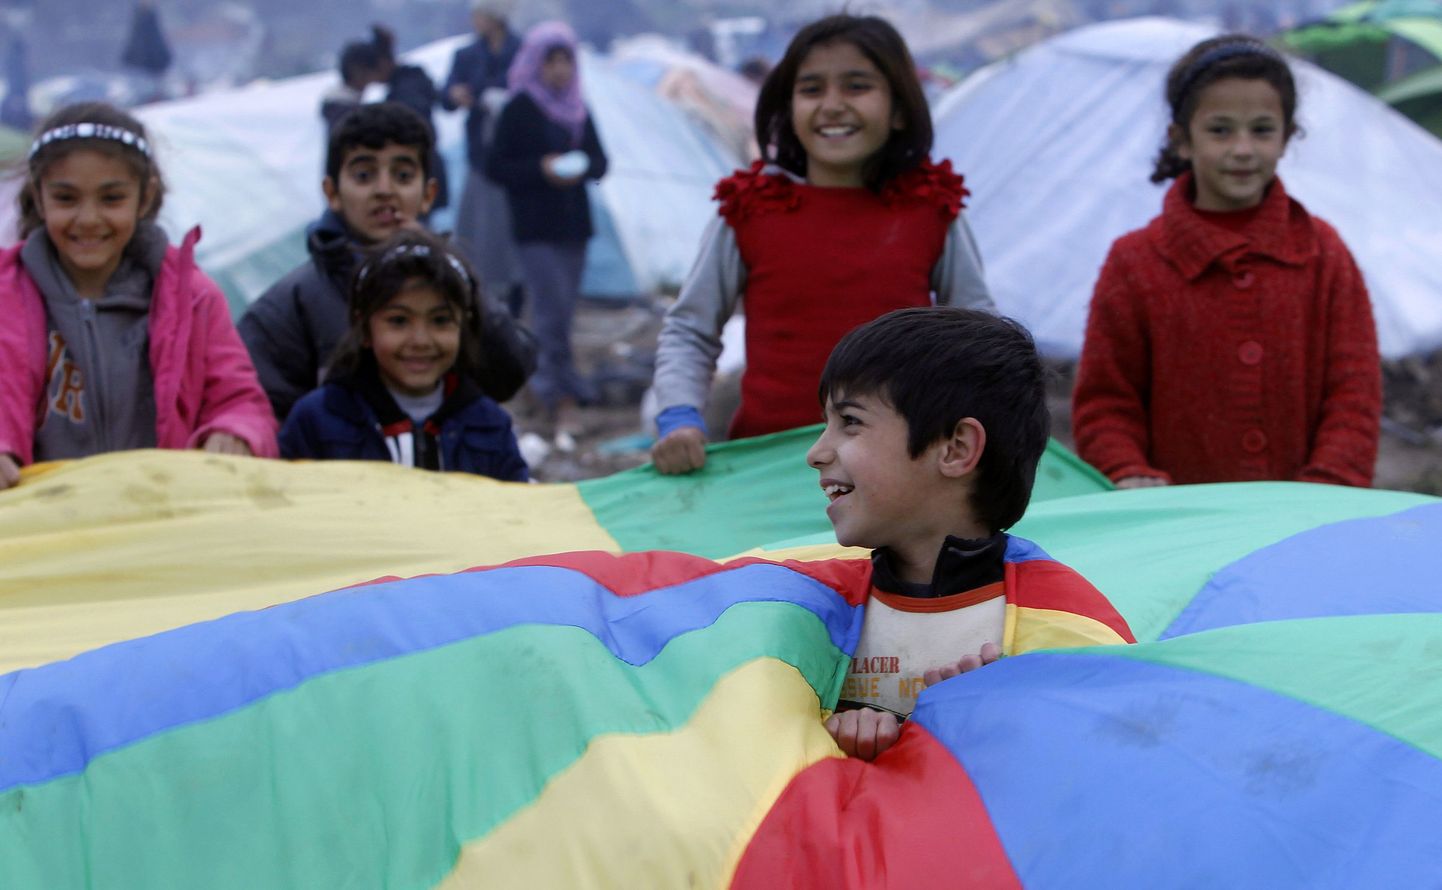 Põgenikest lapsed Kreeka kinnipidamiskeskuses mängimas.